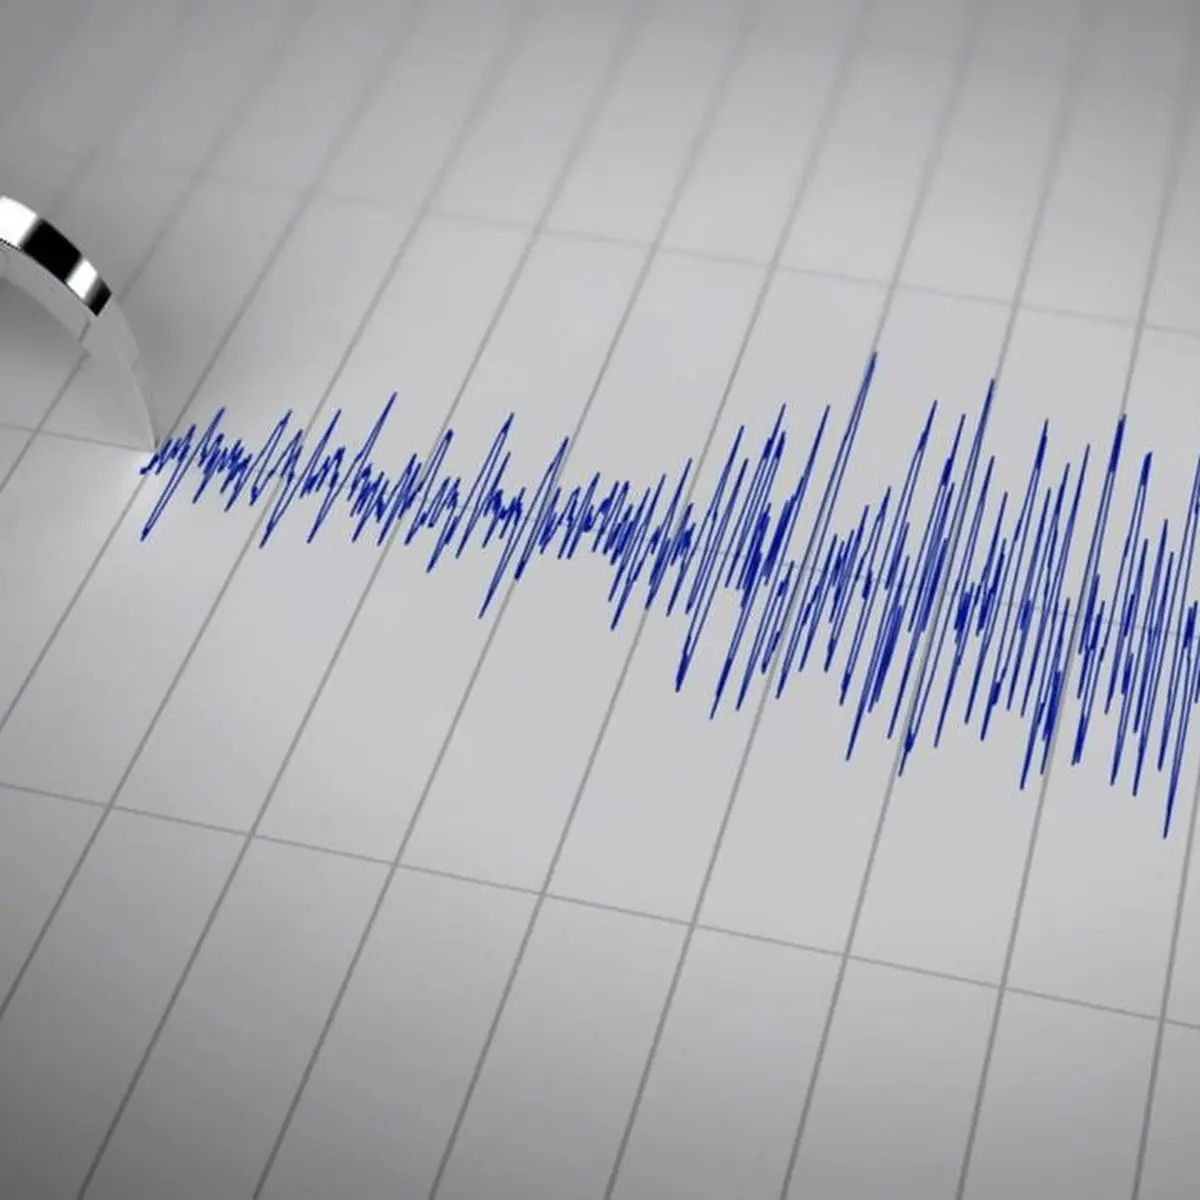 Gempa Berkekuatan Magnitudo 5,3 Guncang Kabupaten Malang - News Liputan6.com